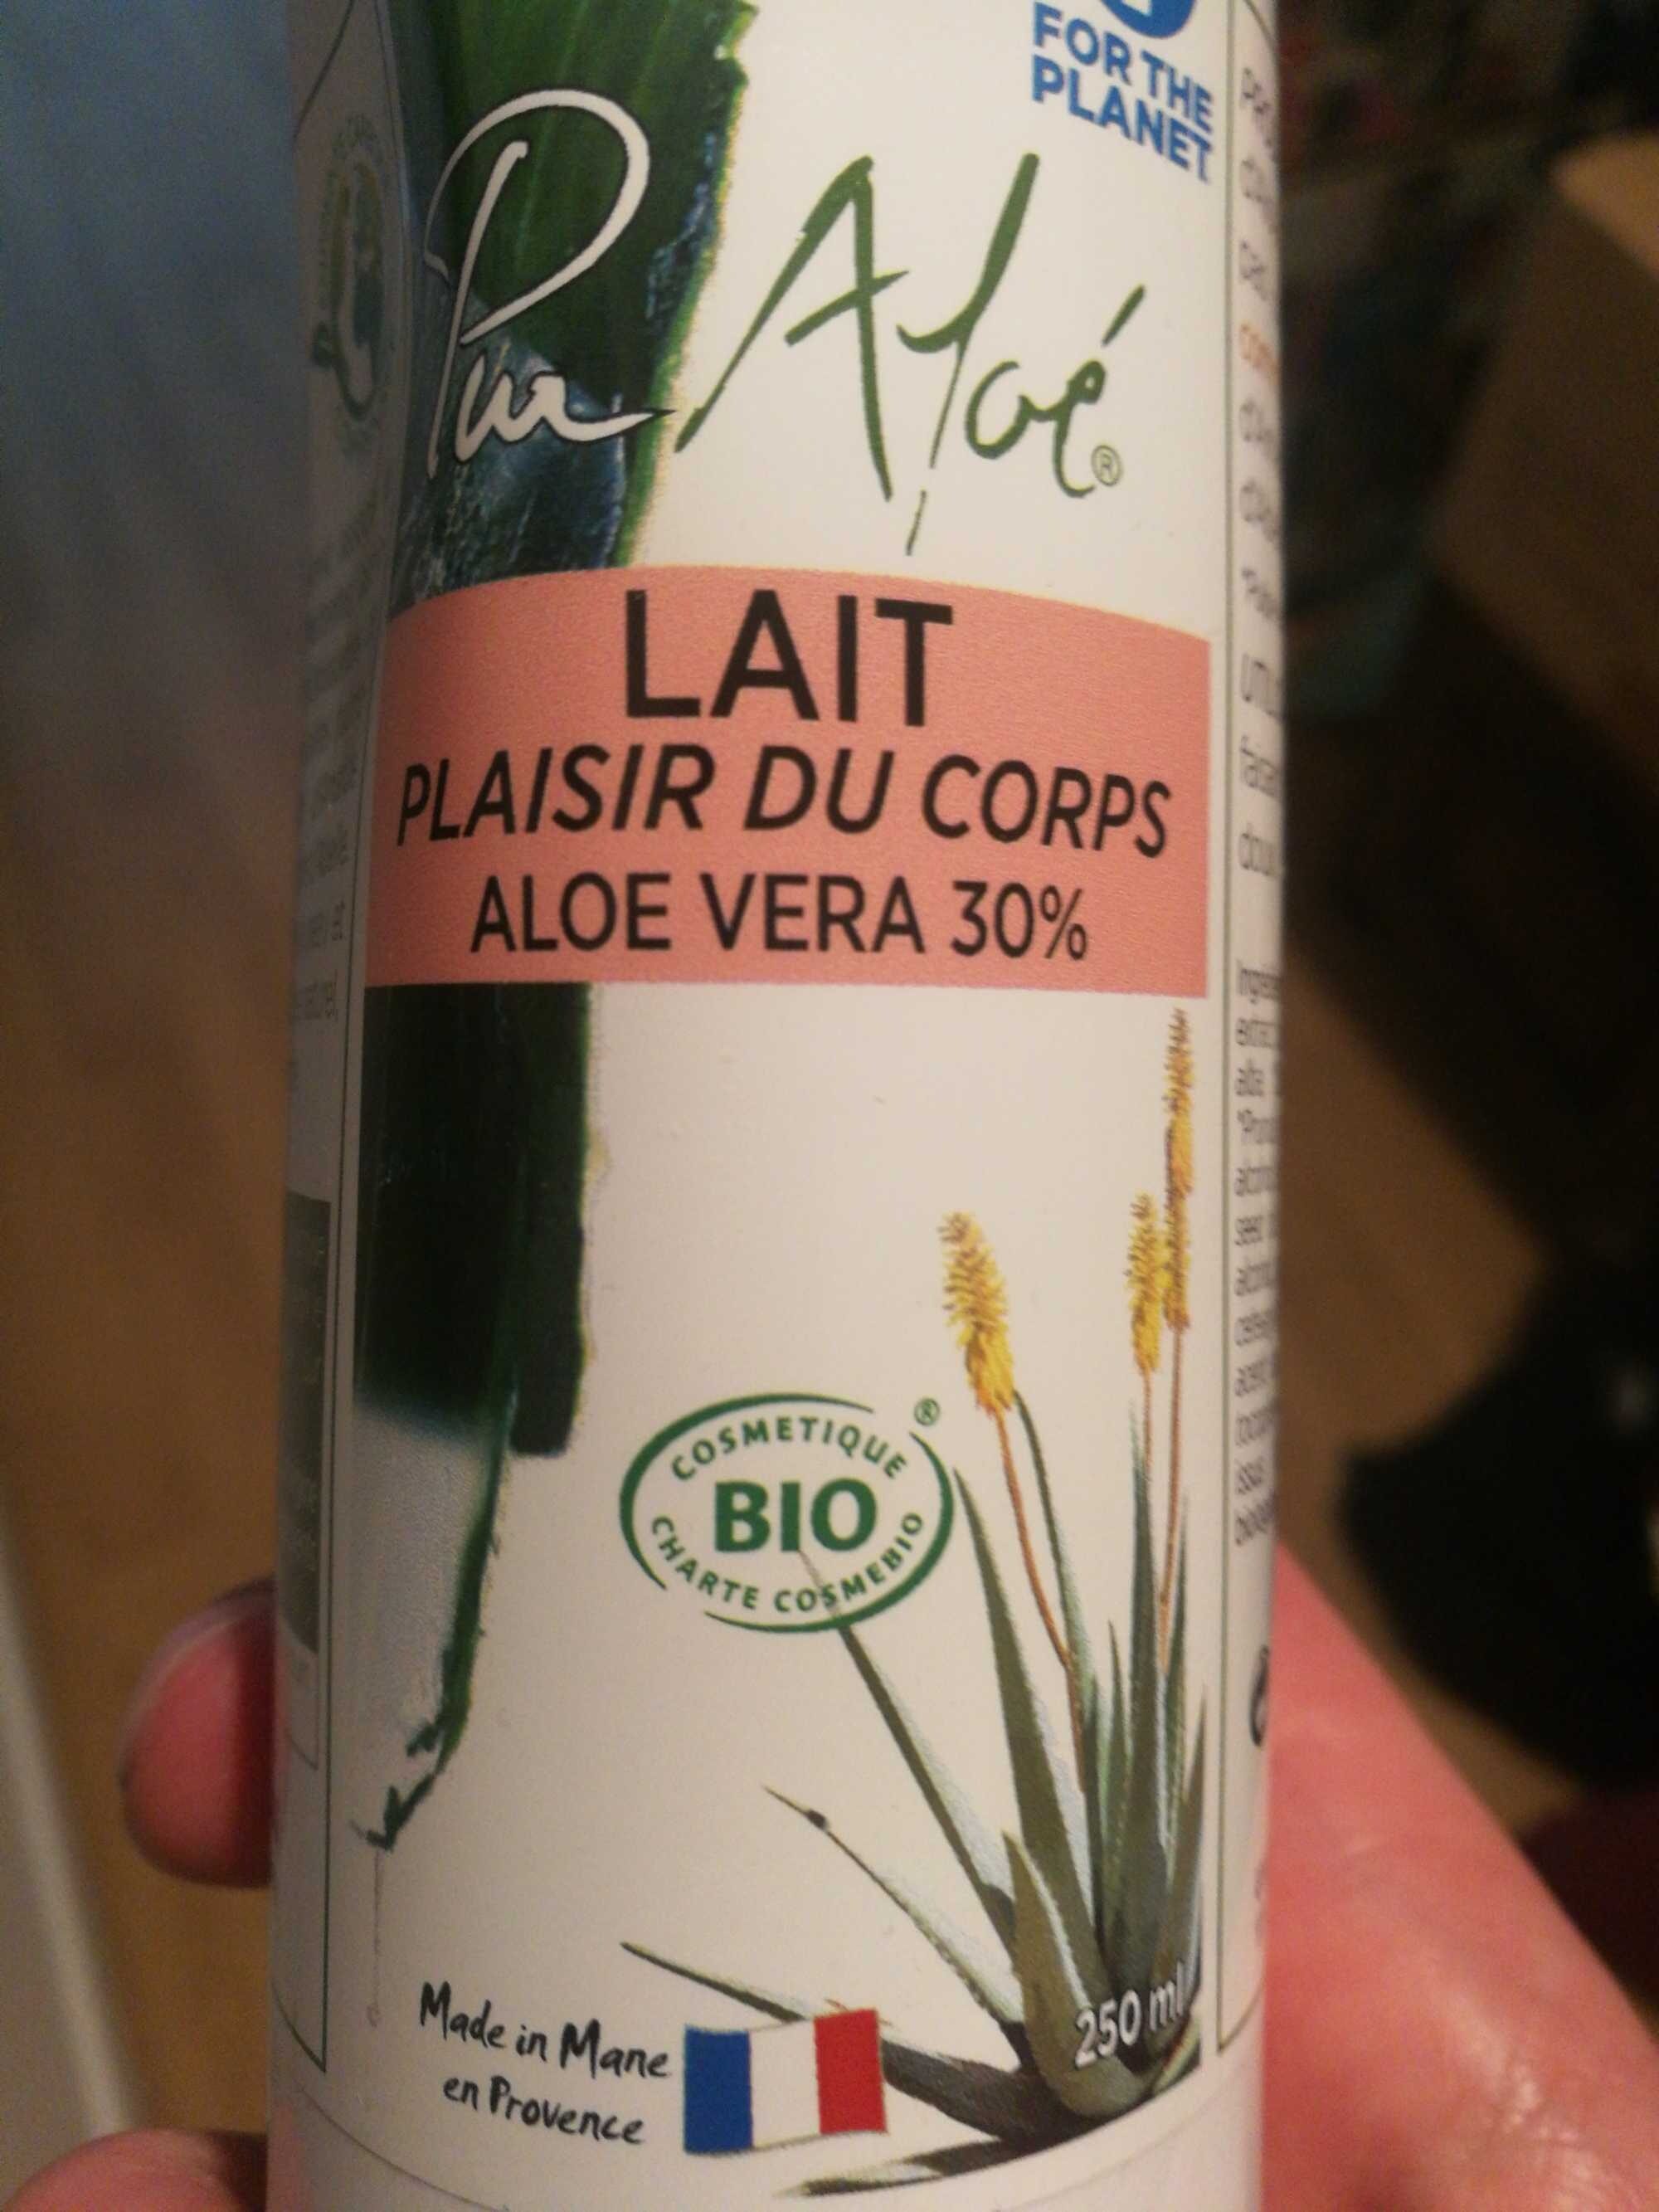 Lait plaisir du corps Aloe Vera 30% - Produkt - fr